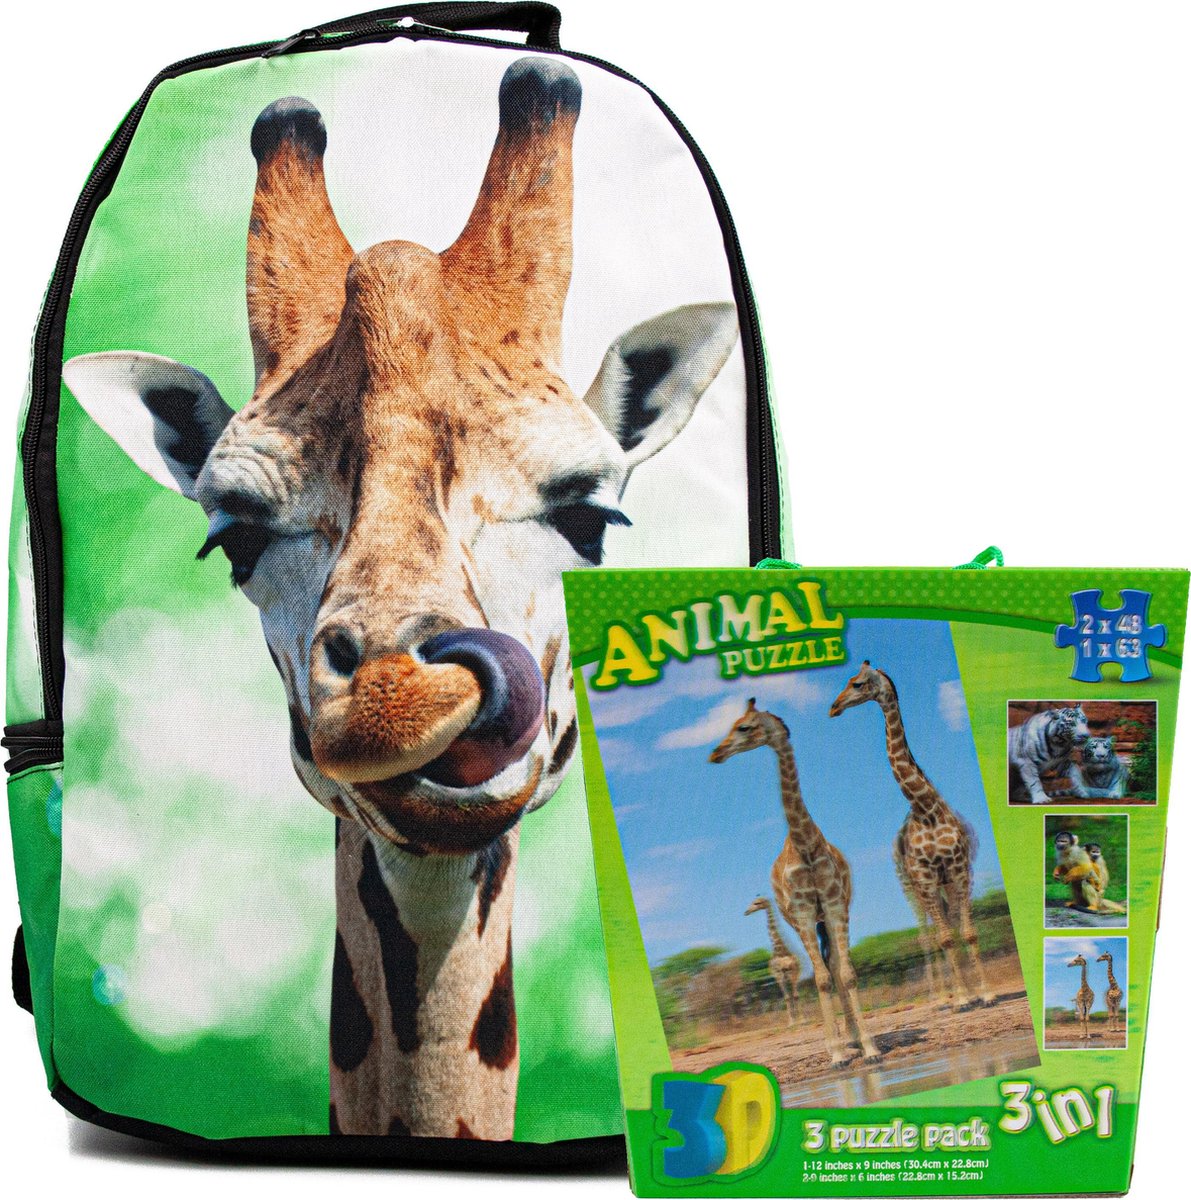 Rugtas giraffe | kinder rugzak jongens voor school - incl. 3 in 1 speelgoed 3d puzzel - rugzak meisje giraf - Afrika thema backpack - hoogte 42 cm